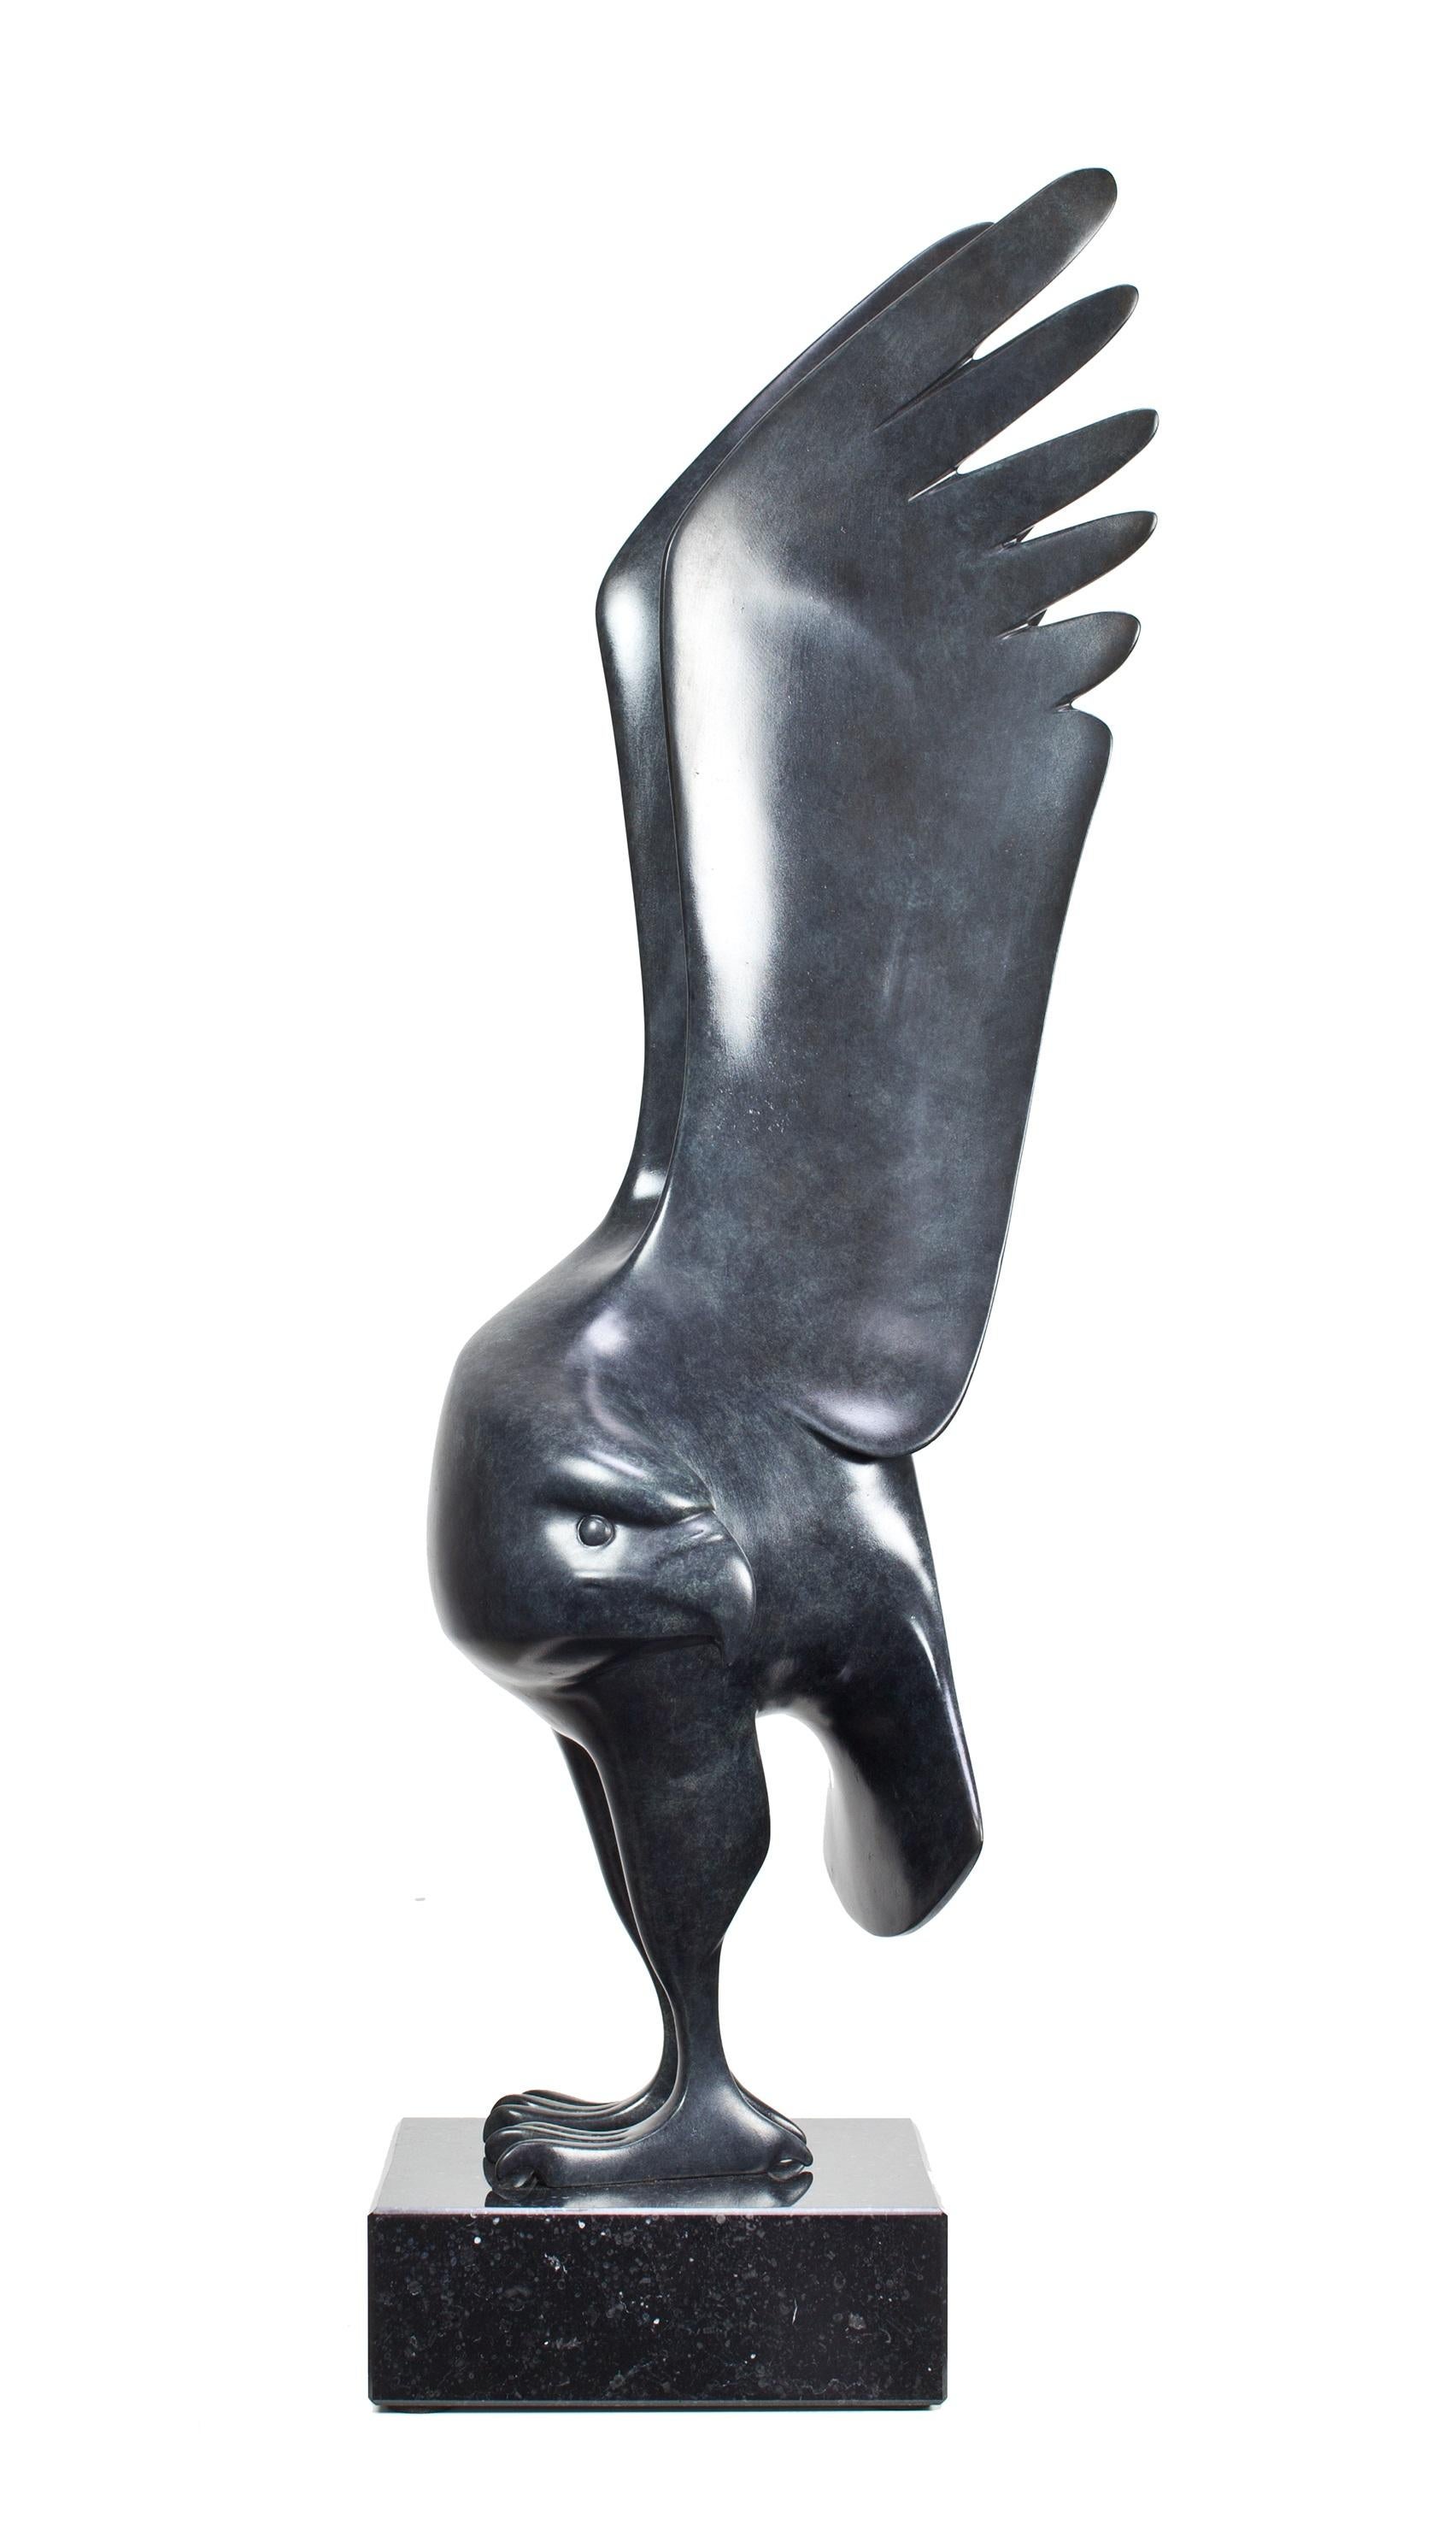 Evert den Hartog Figurative Sculpture – Roofvogel Klein Beutevogel Kleine Bronze-Skulptur Wildes Tier Limitierte Auflage